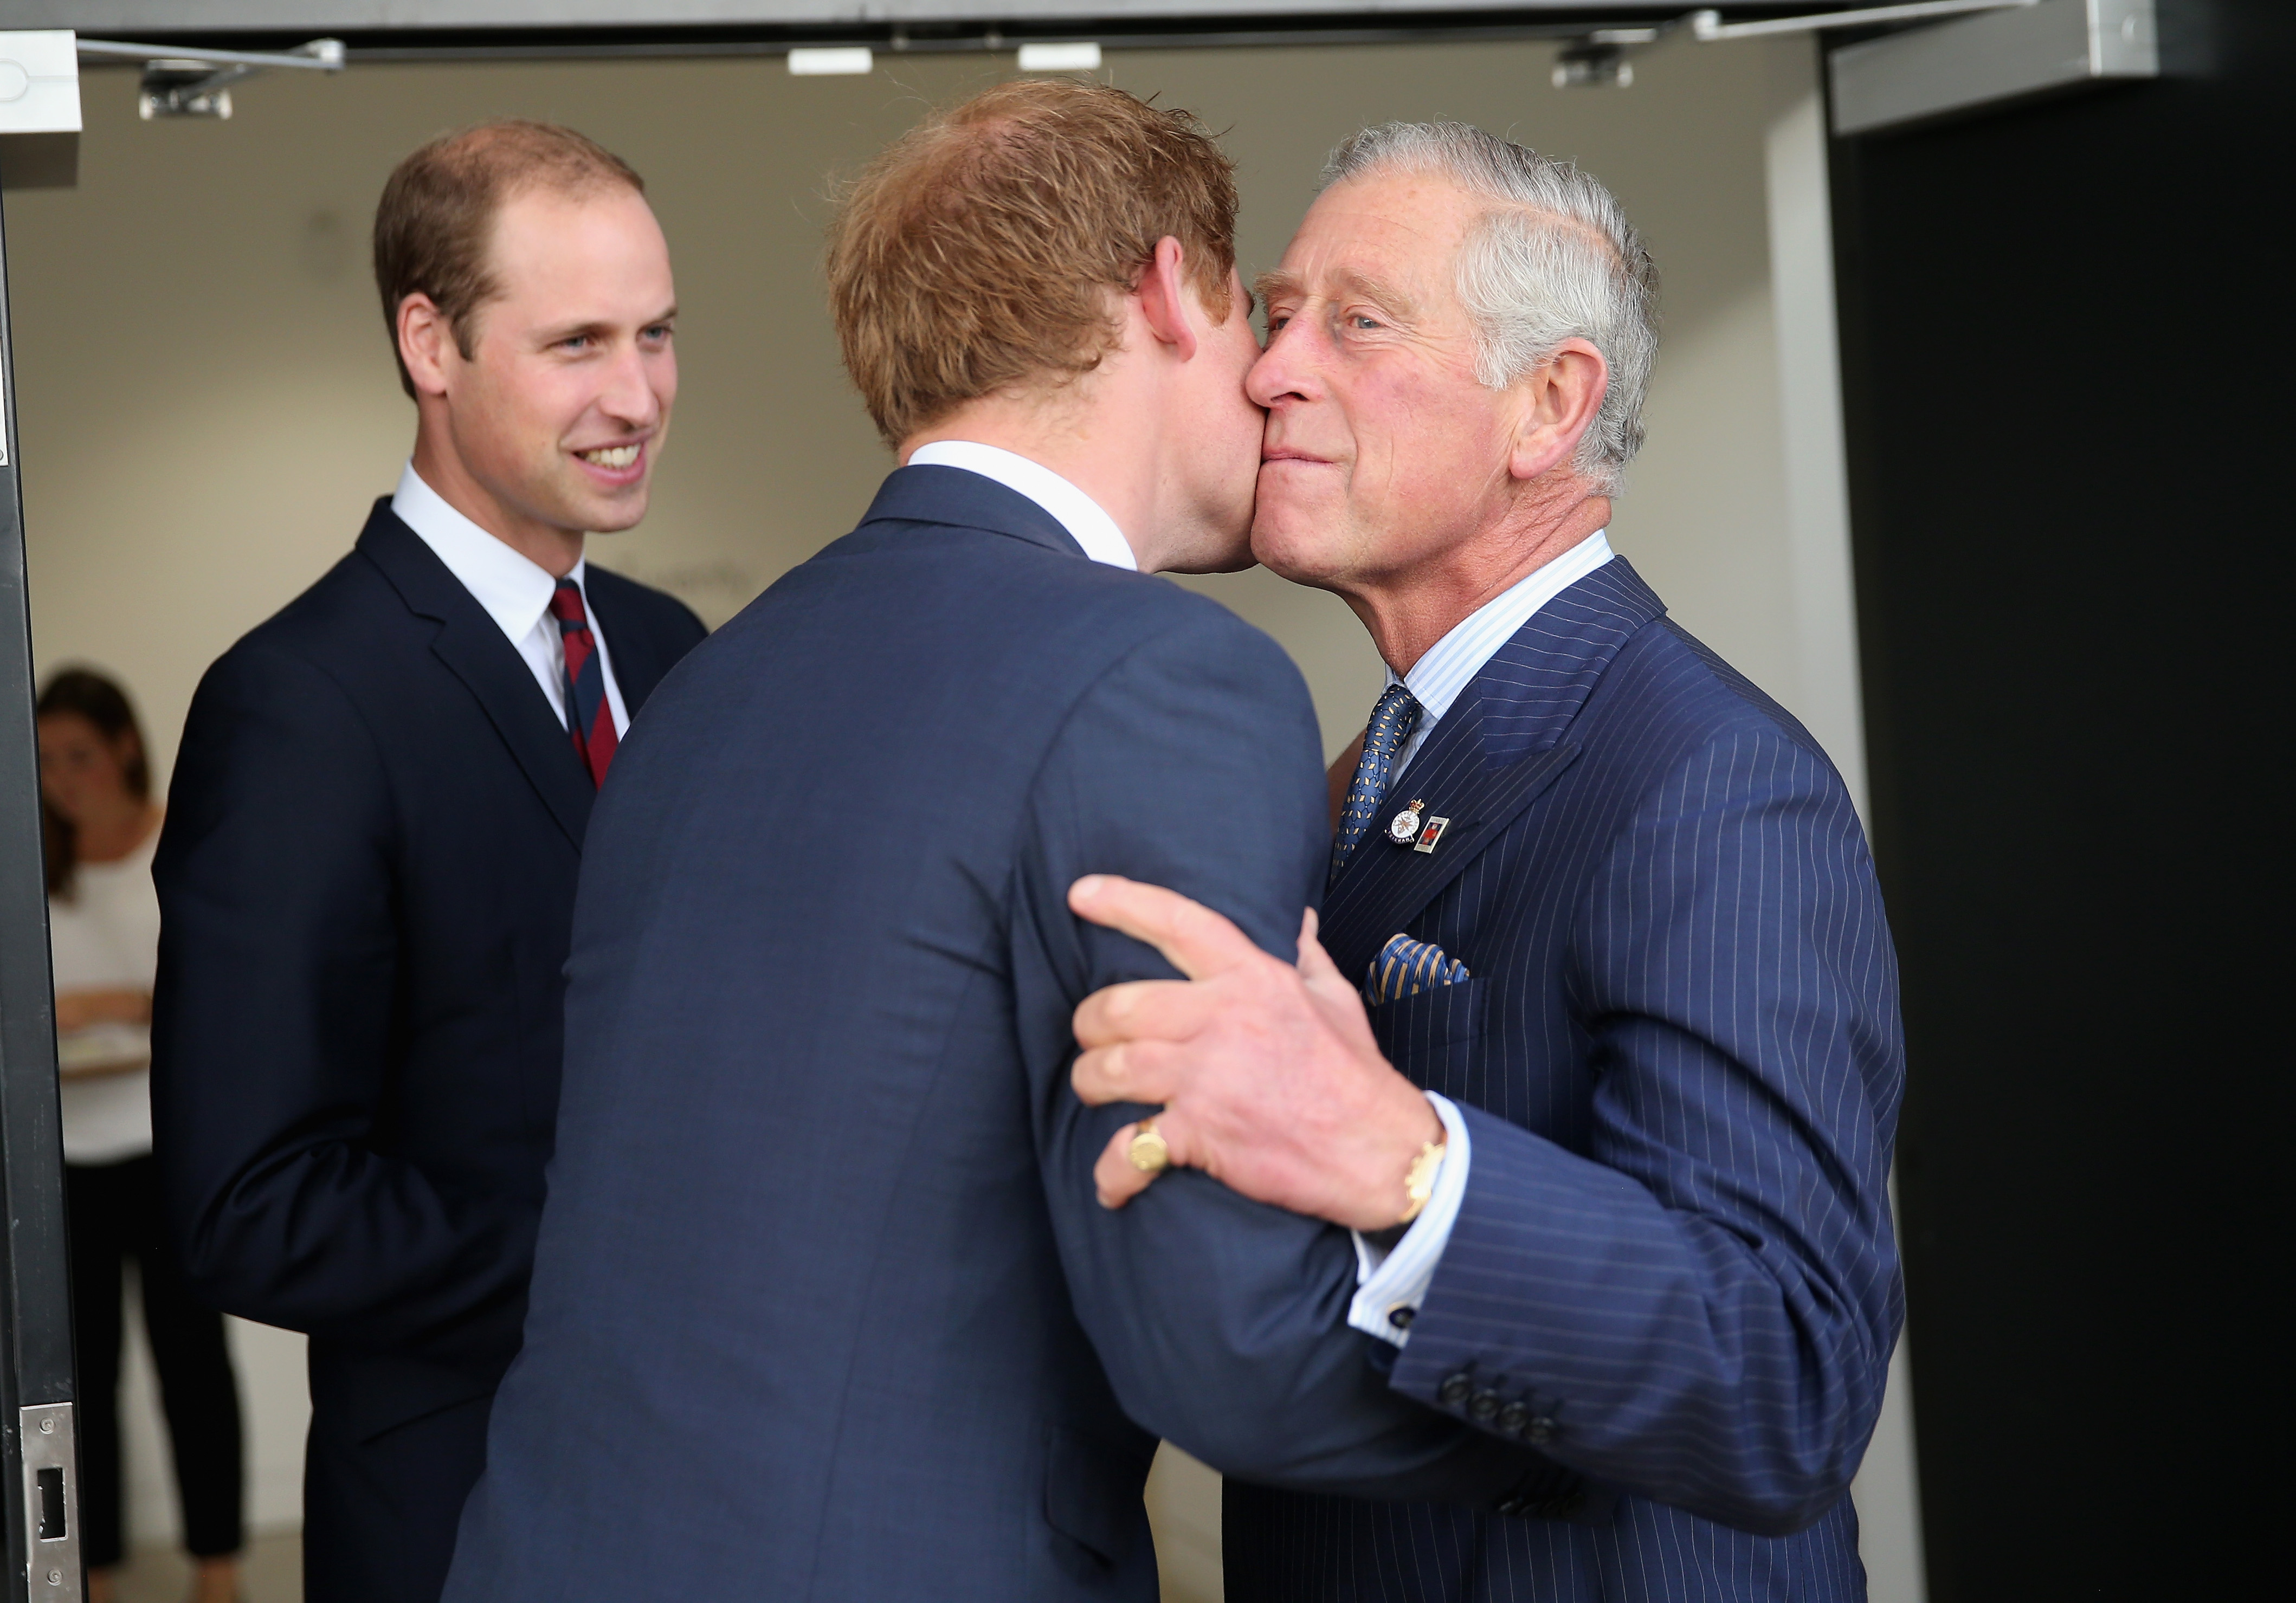 Le roi Charles avec ses fils le prince Harry et le prince William lors de la cérémonie d'ouverture des Invictus Games le 10 septembre 2014 à Londres, Angleterre | Source : Getty Images